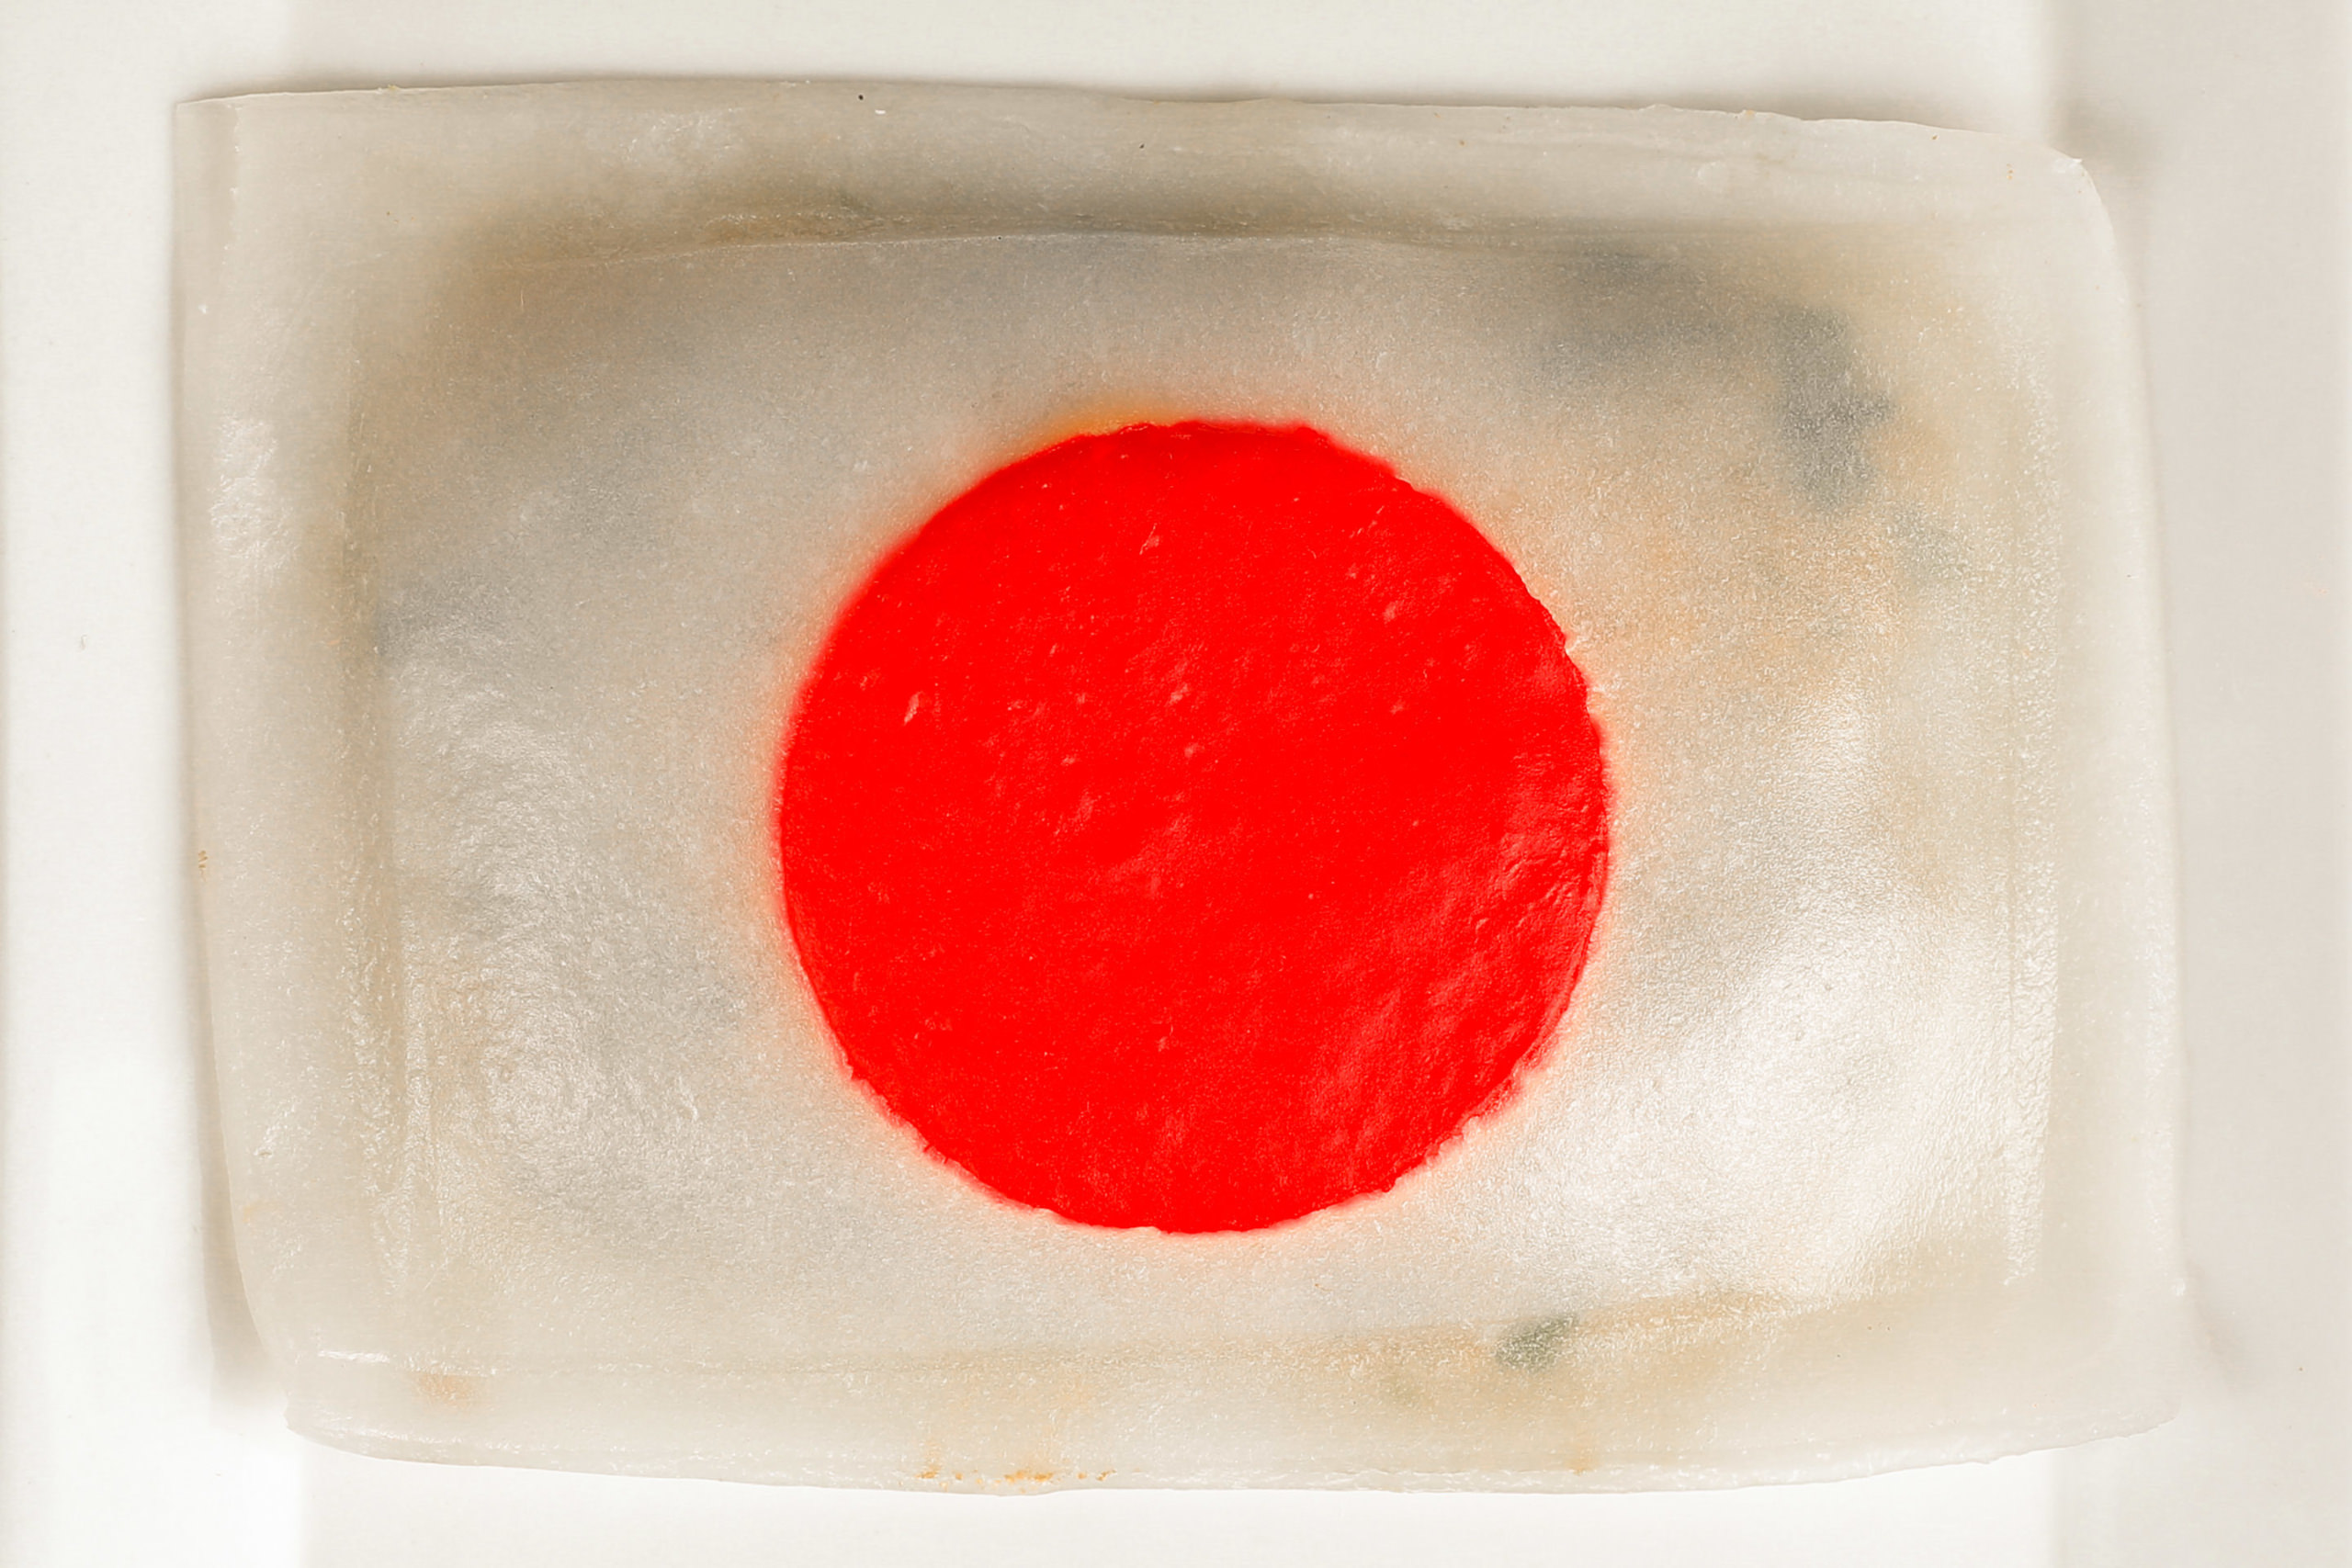 日本国旗をかたどったジャンボな餃子を7／13から期間限定販売！
サマージャンボ当選とコロナ禍の飲食店の活性化を祈念！